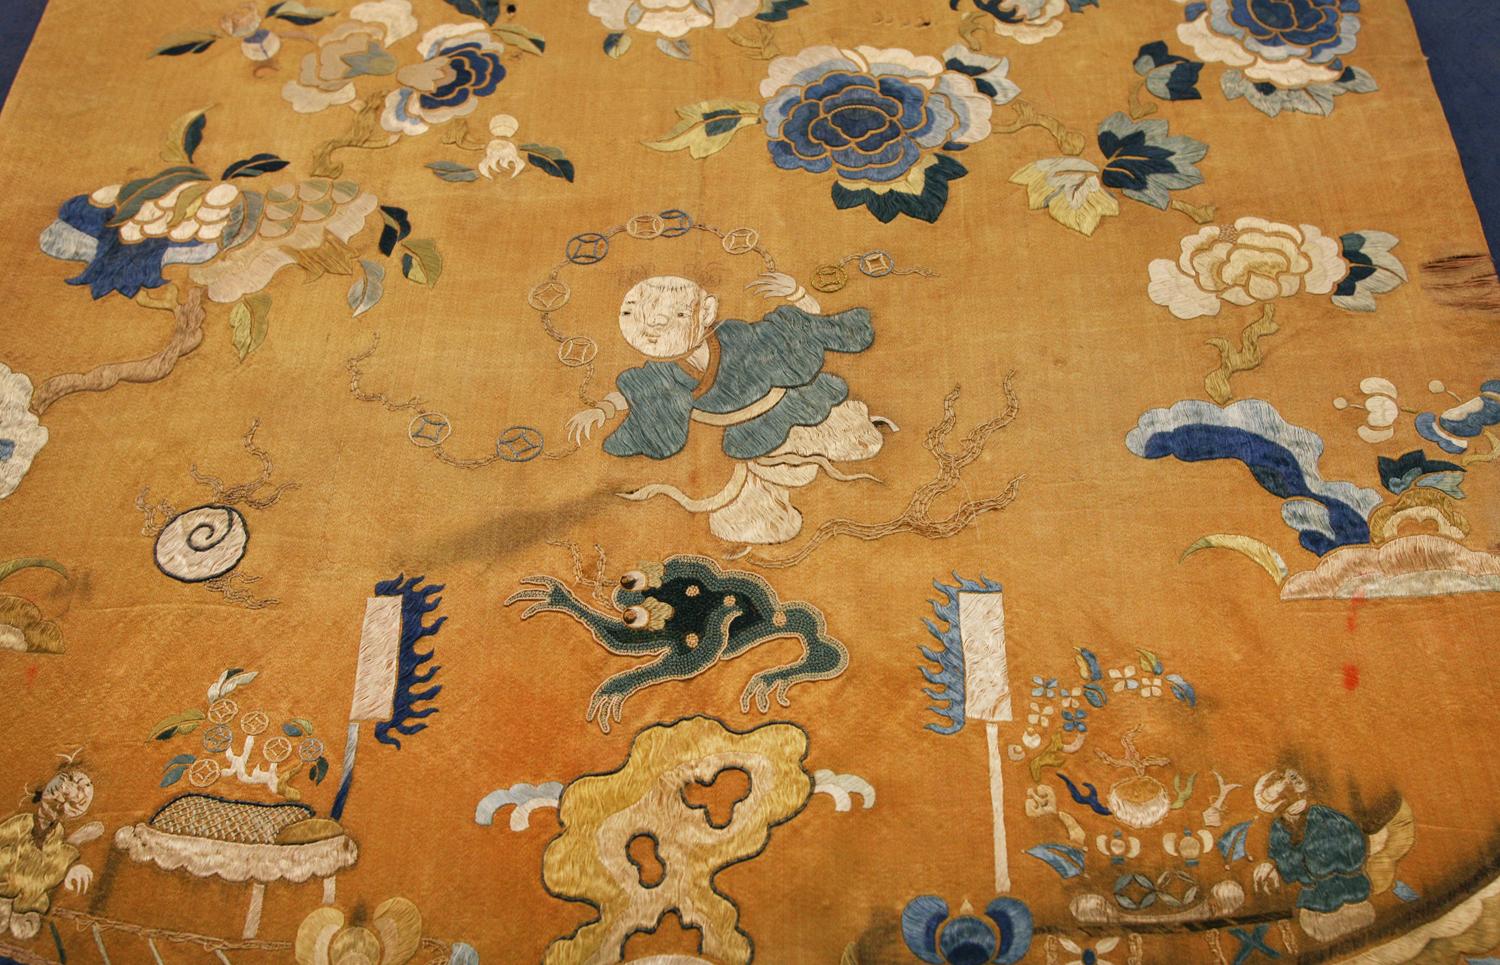 Il s'agit d'un petit textile chinois ancien en soie tissé au début du 20e siècle, vers 1900. Il mesure 50 x 47CM. Son design est centré sur un homme qui tient des talismans traditionnels chinois dans une bande de nuages et est entouré d'arbres avec